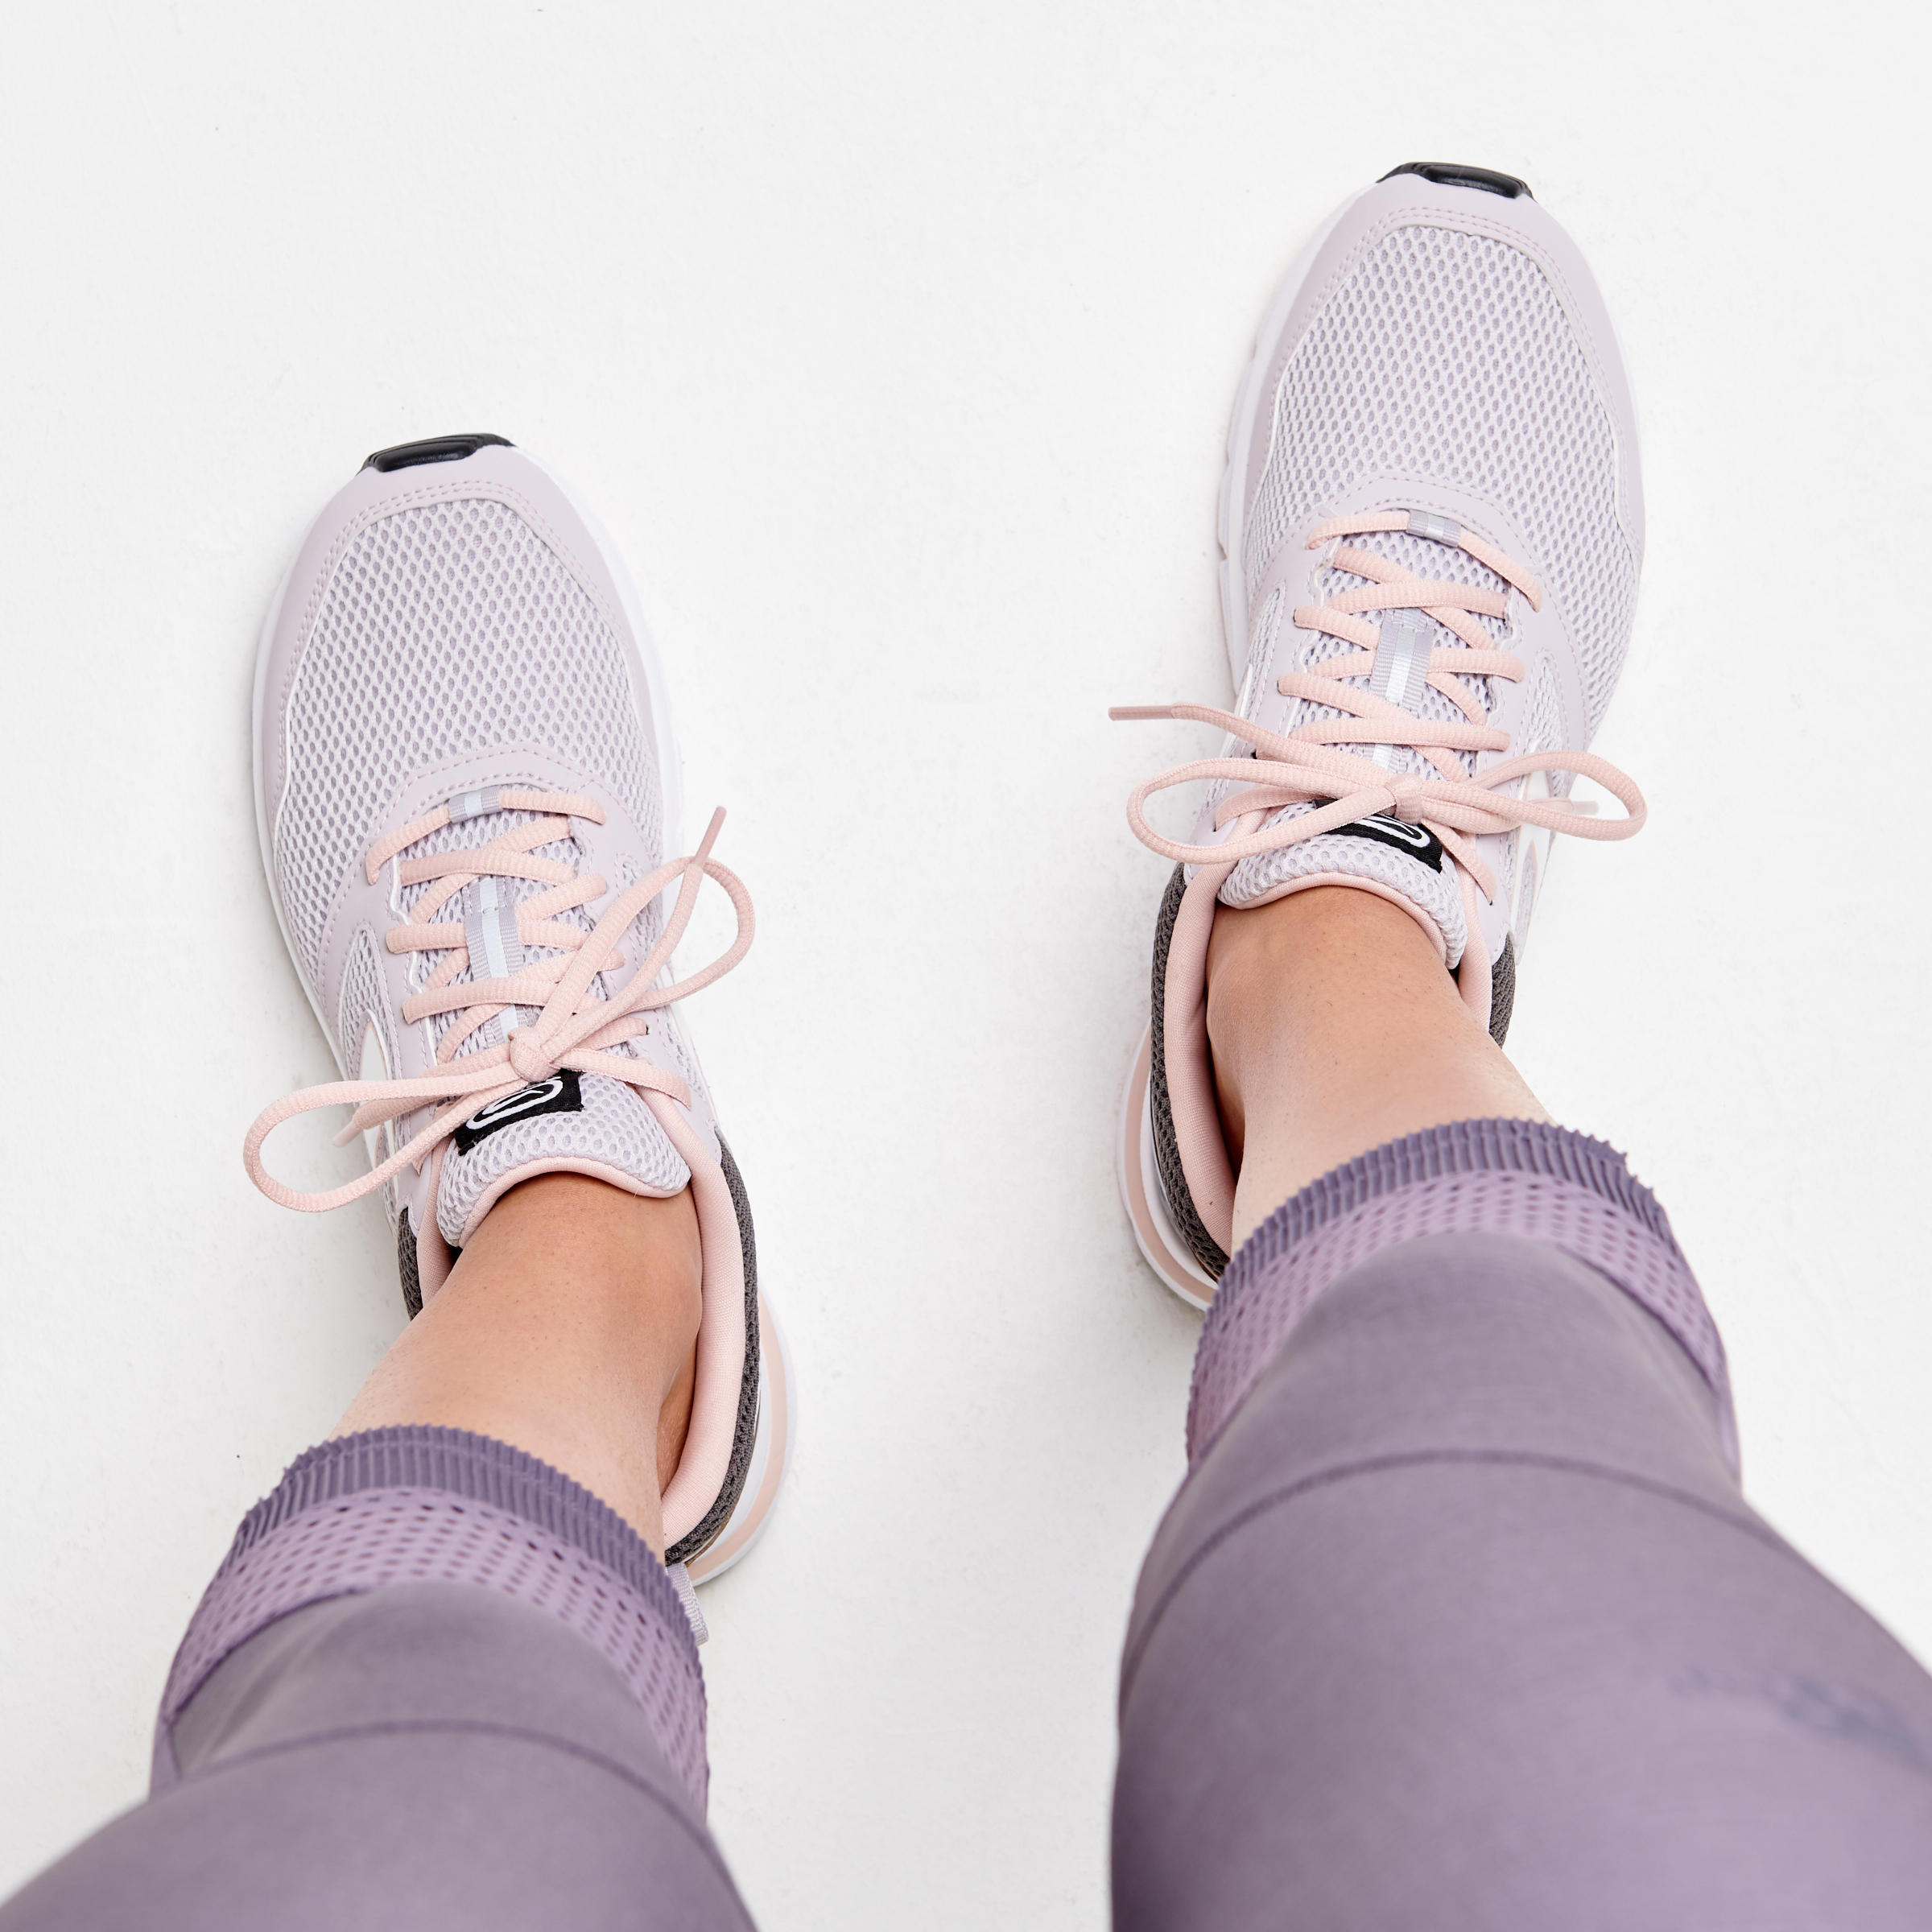 Women's Running Shoes – Run Active Grey - KALENJI